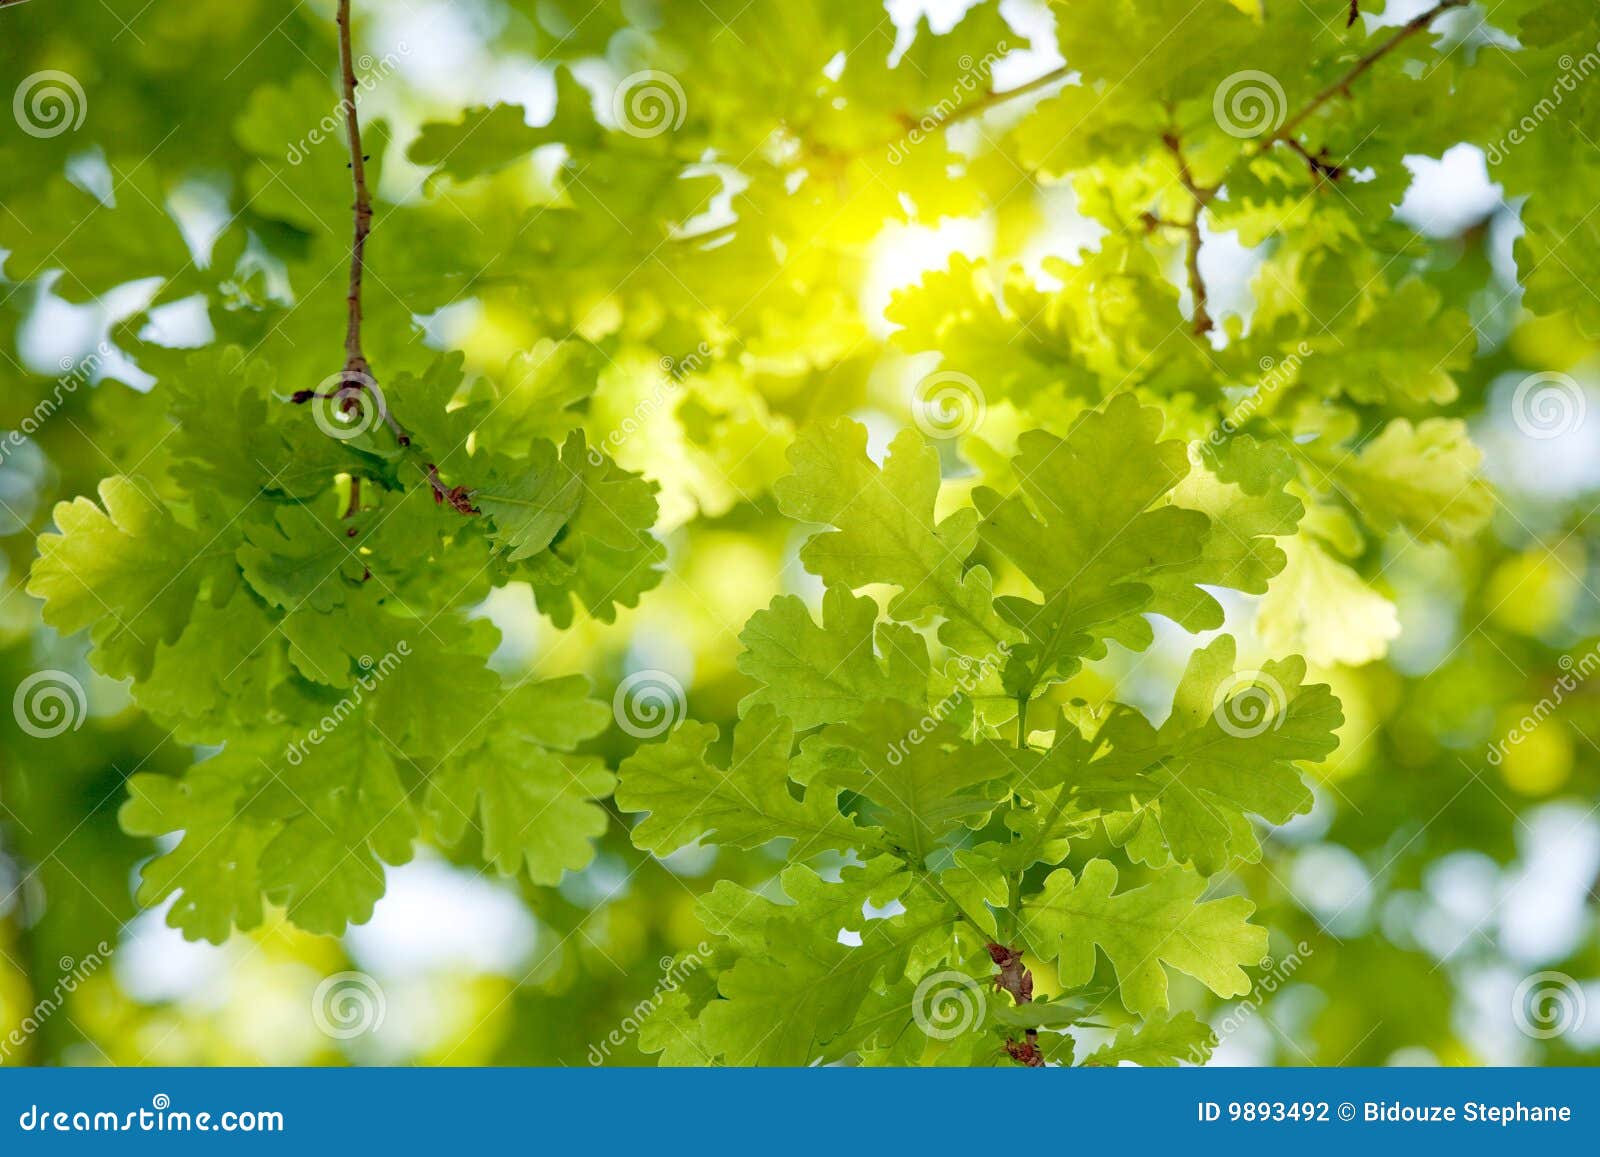 oak tree leaves sunlight